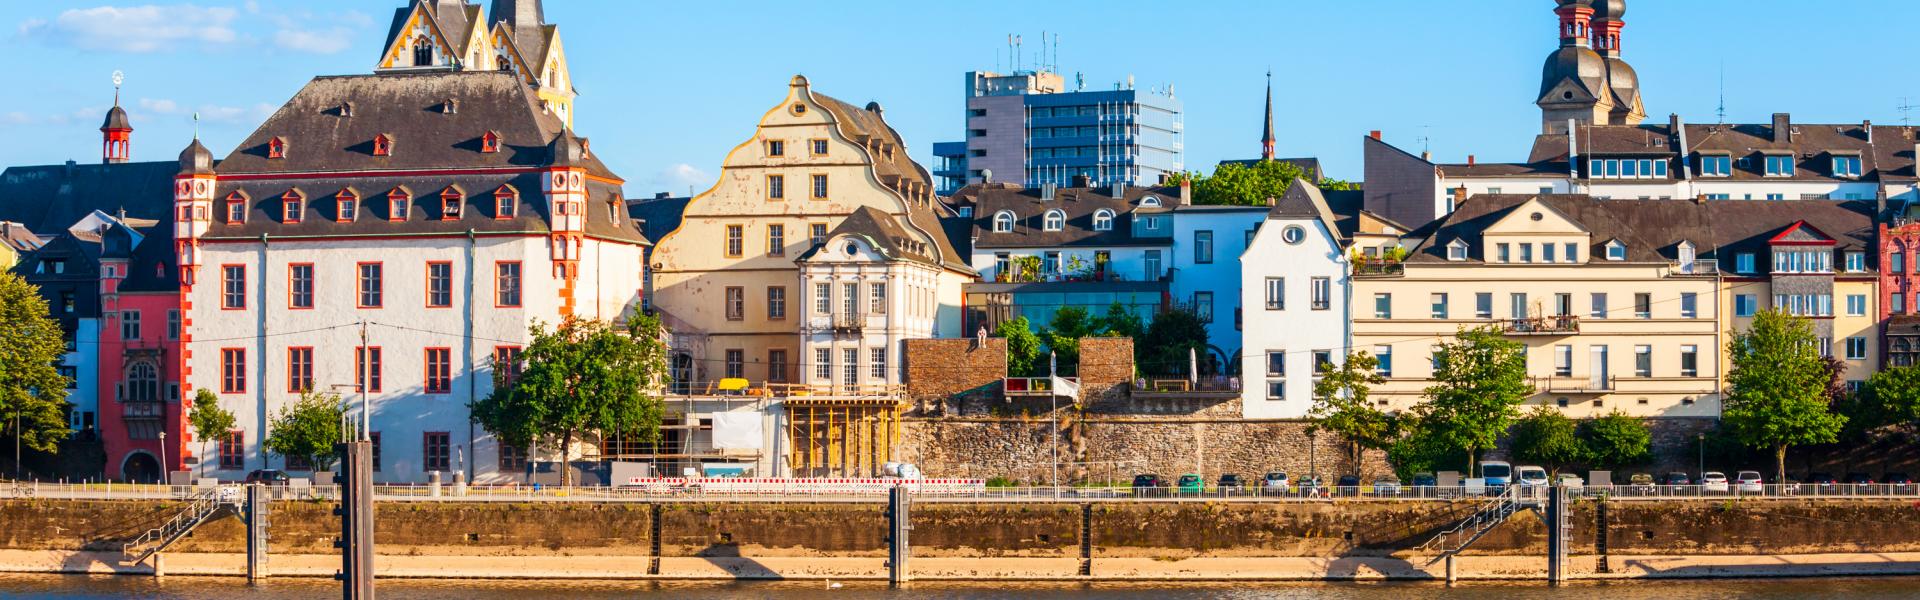 Ferienwohnungen & Ferienhäuser für Urlaub in Koblenz - Casamundo